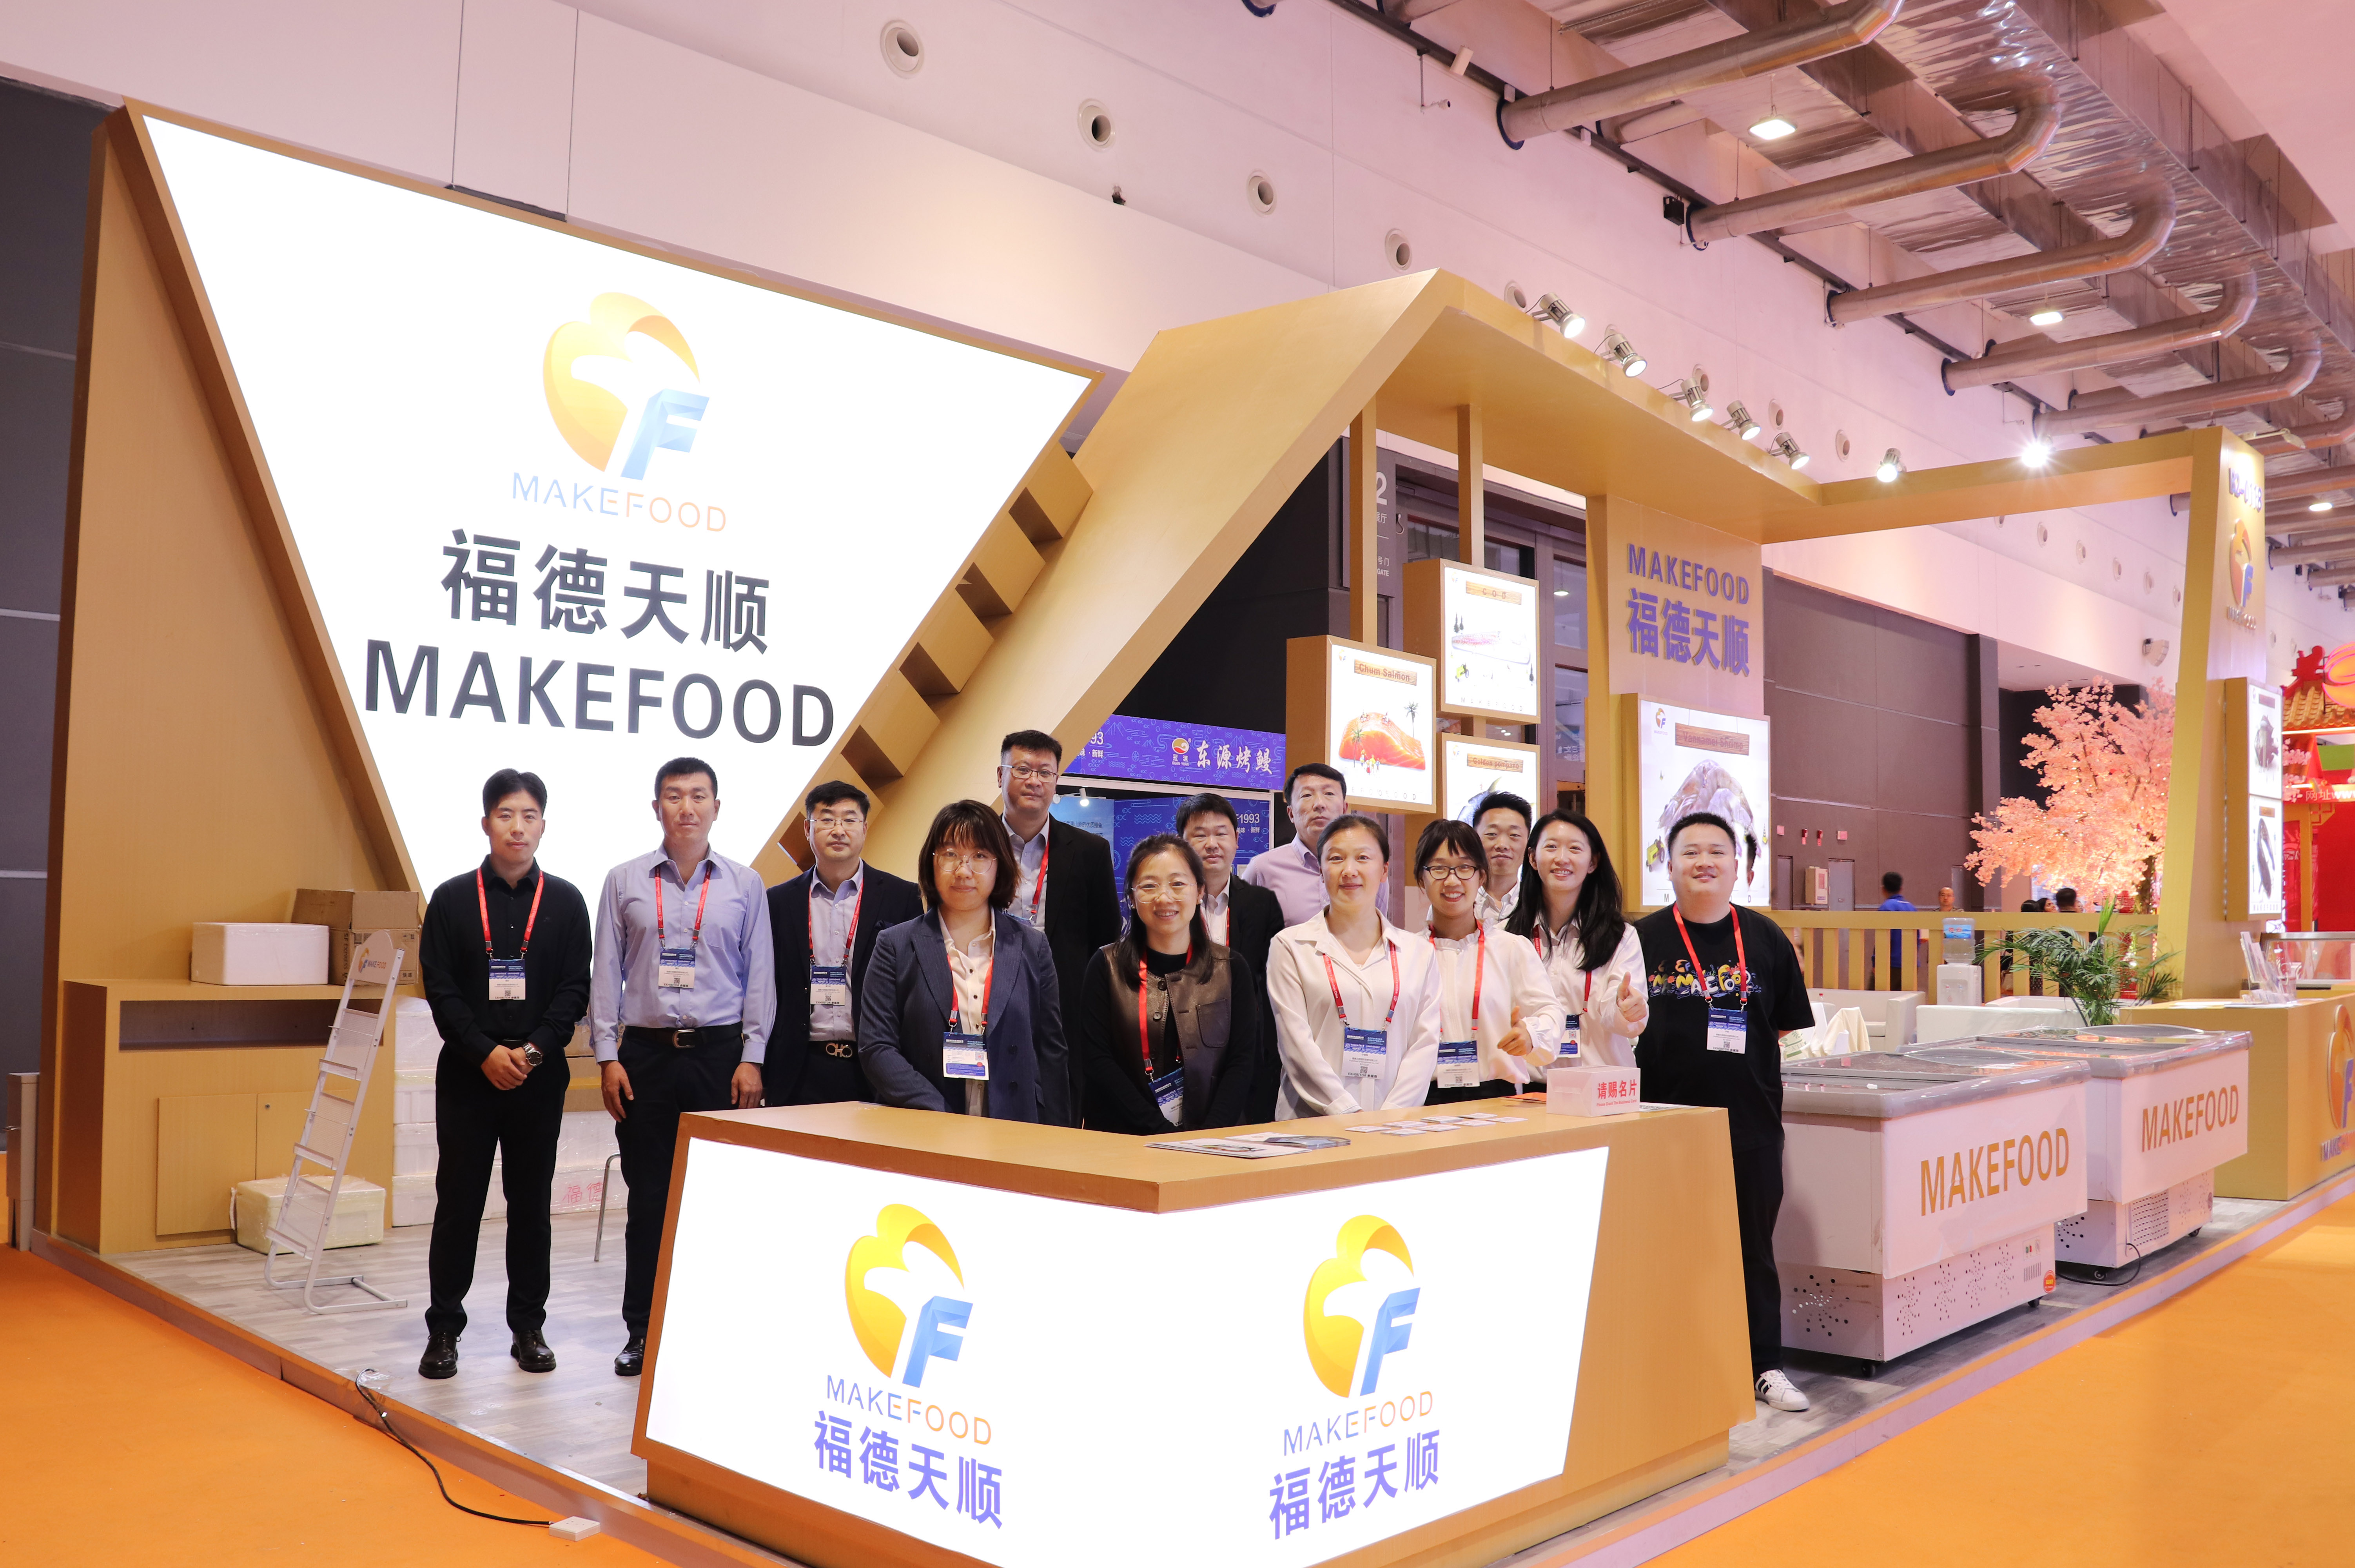 MAKEFOOD fez uma aparição maravilhosa na Qingdao Maritime Expo para discutir a inovação da indústria e o desenvolvimento sustentável